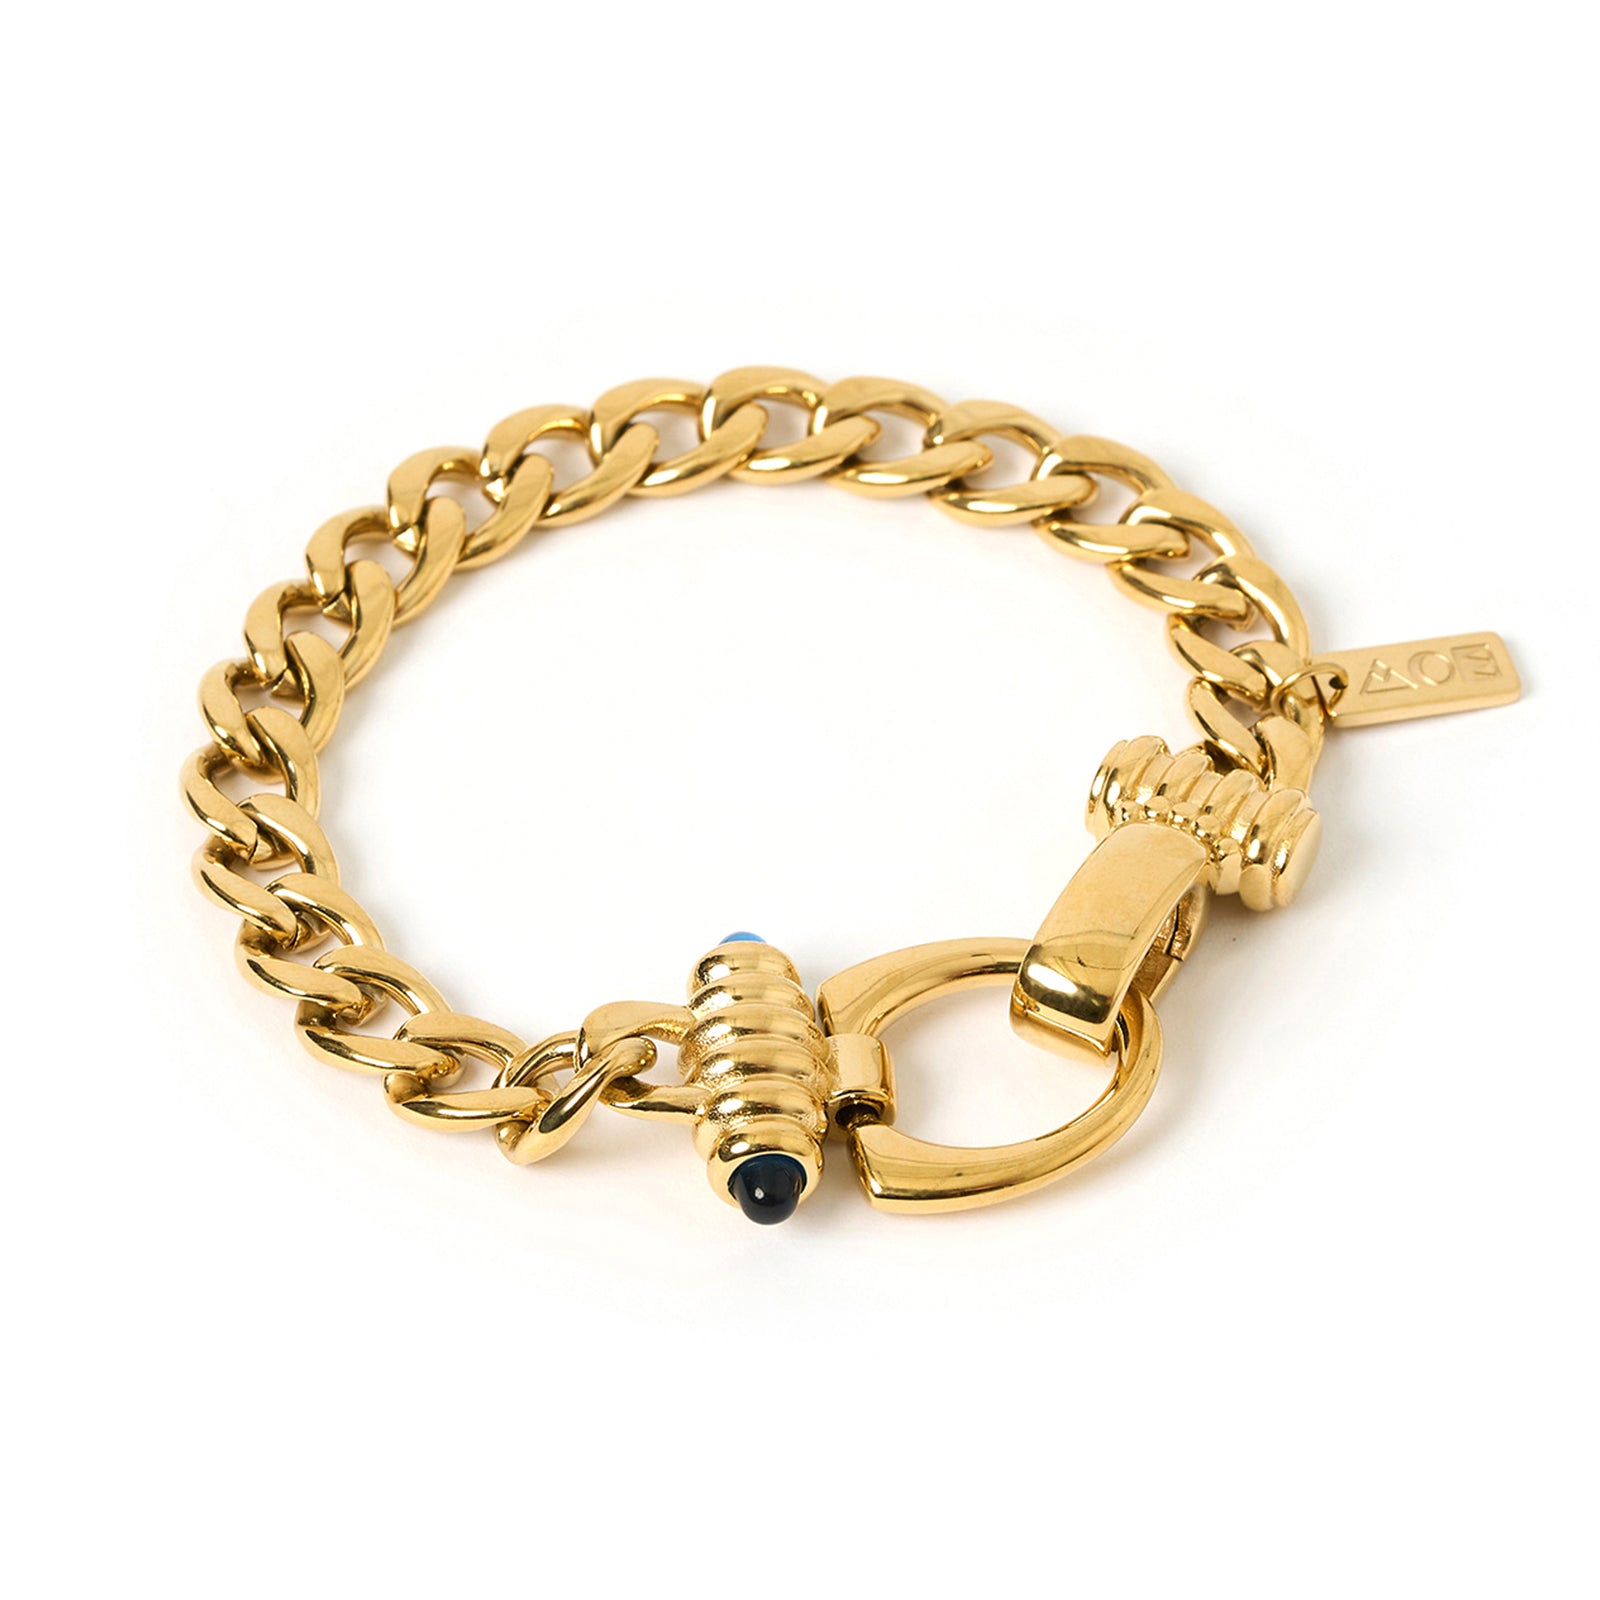 Tauba Gold Bracelet